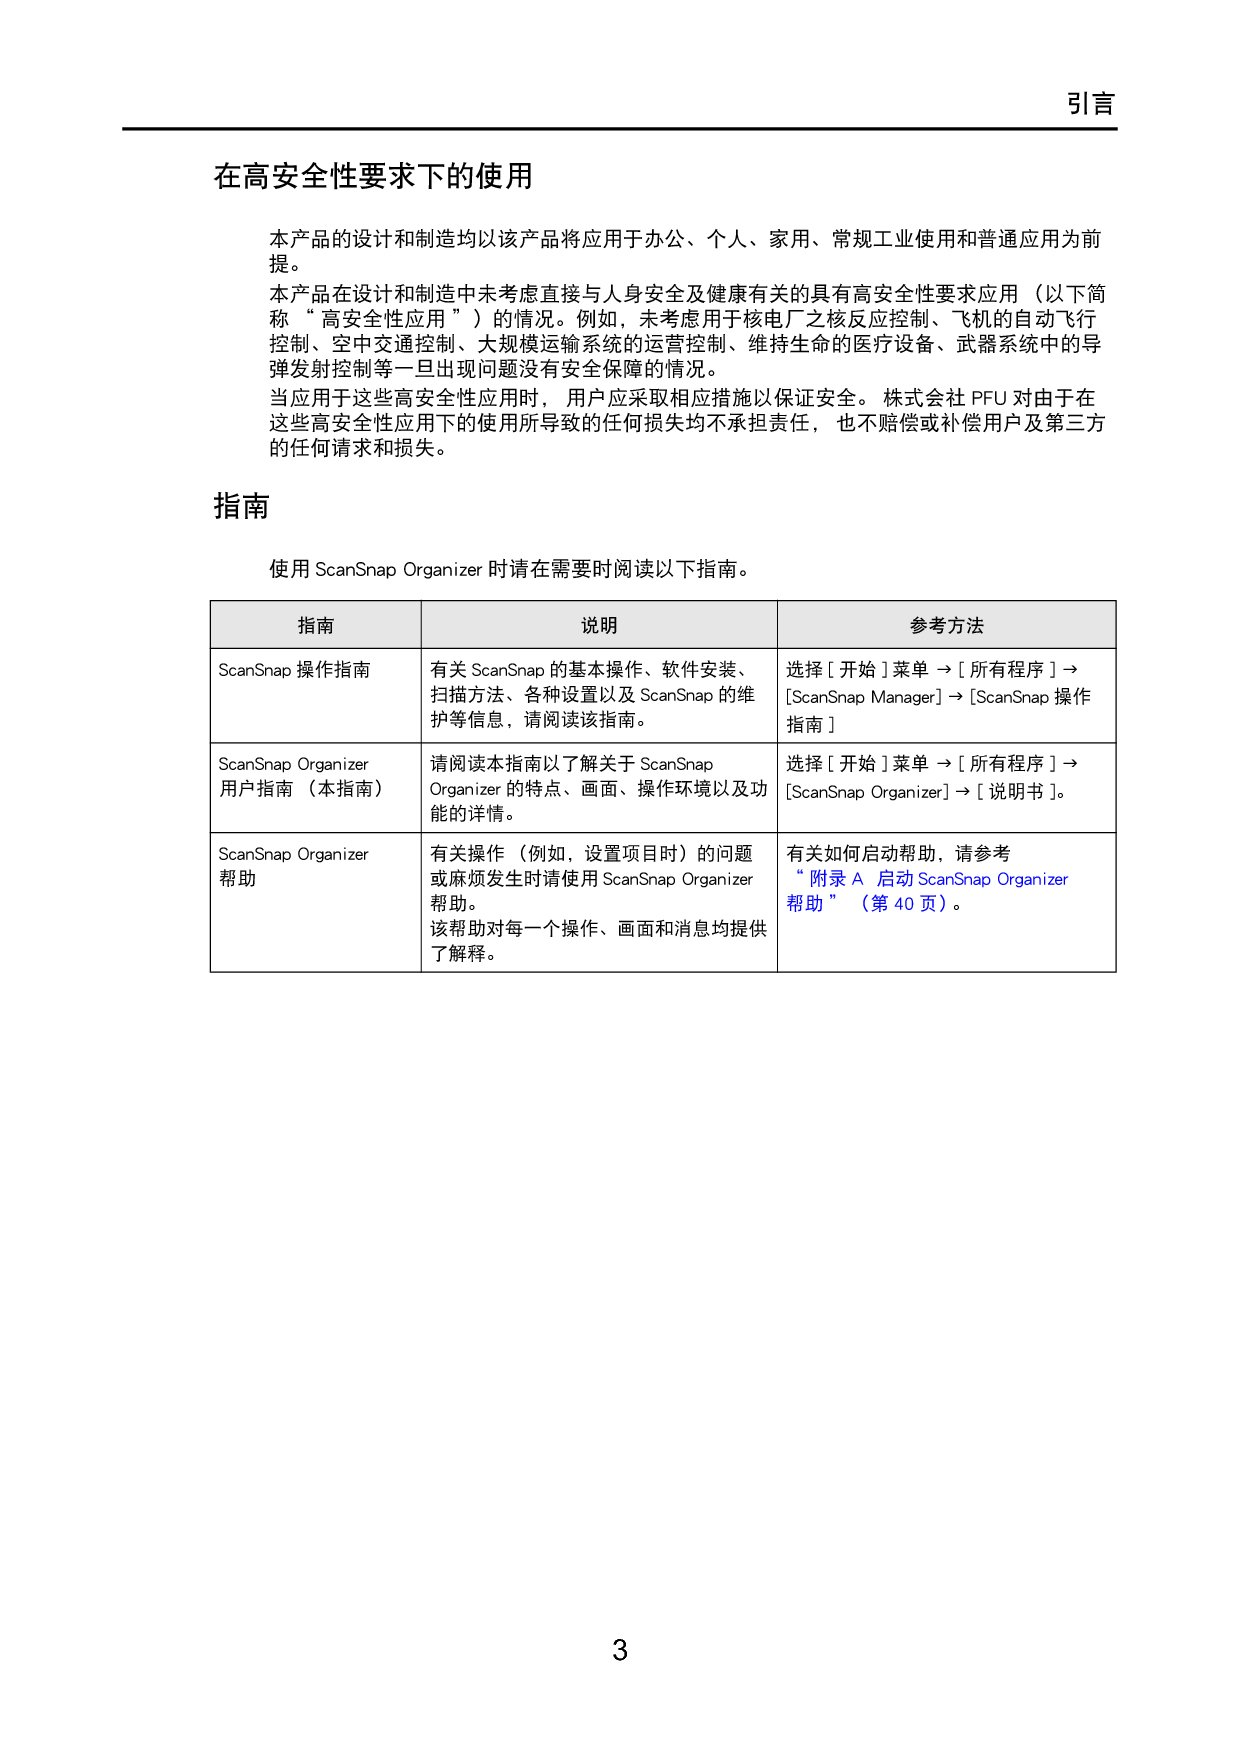 富士通 Fujitsu ScanSnap Organizer 2012年1月 用户指南 第2页